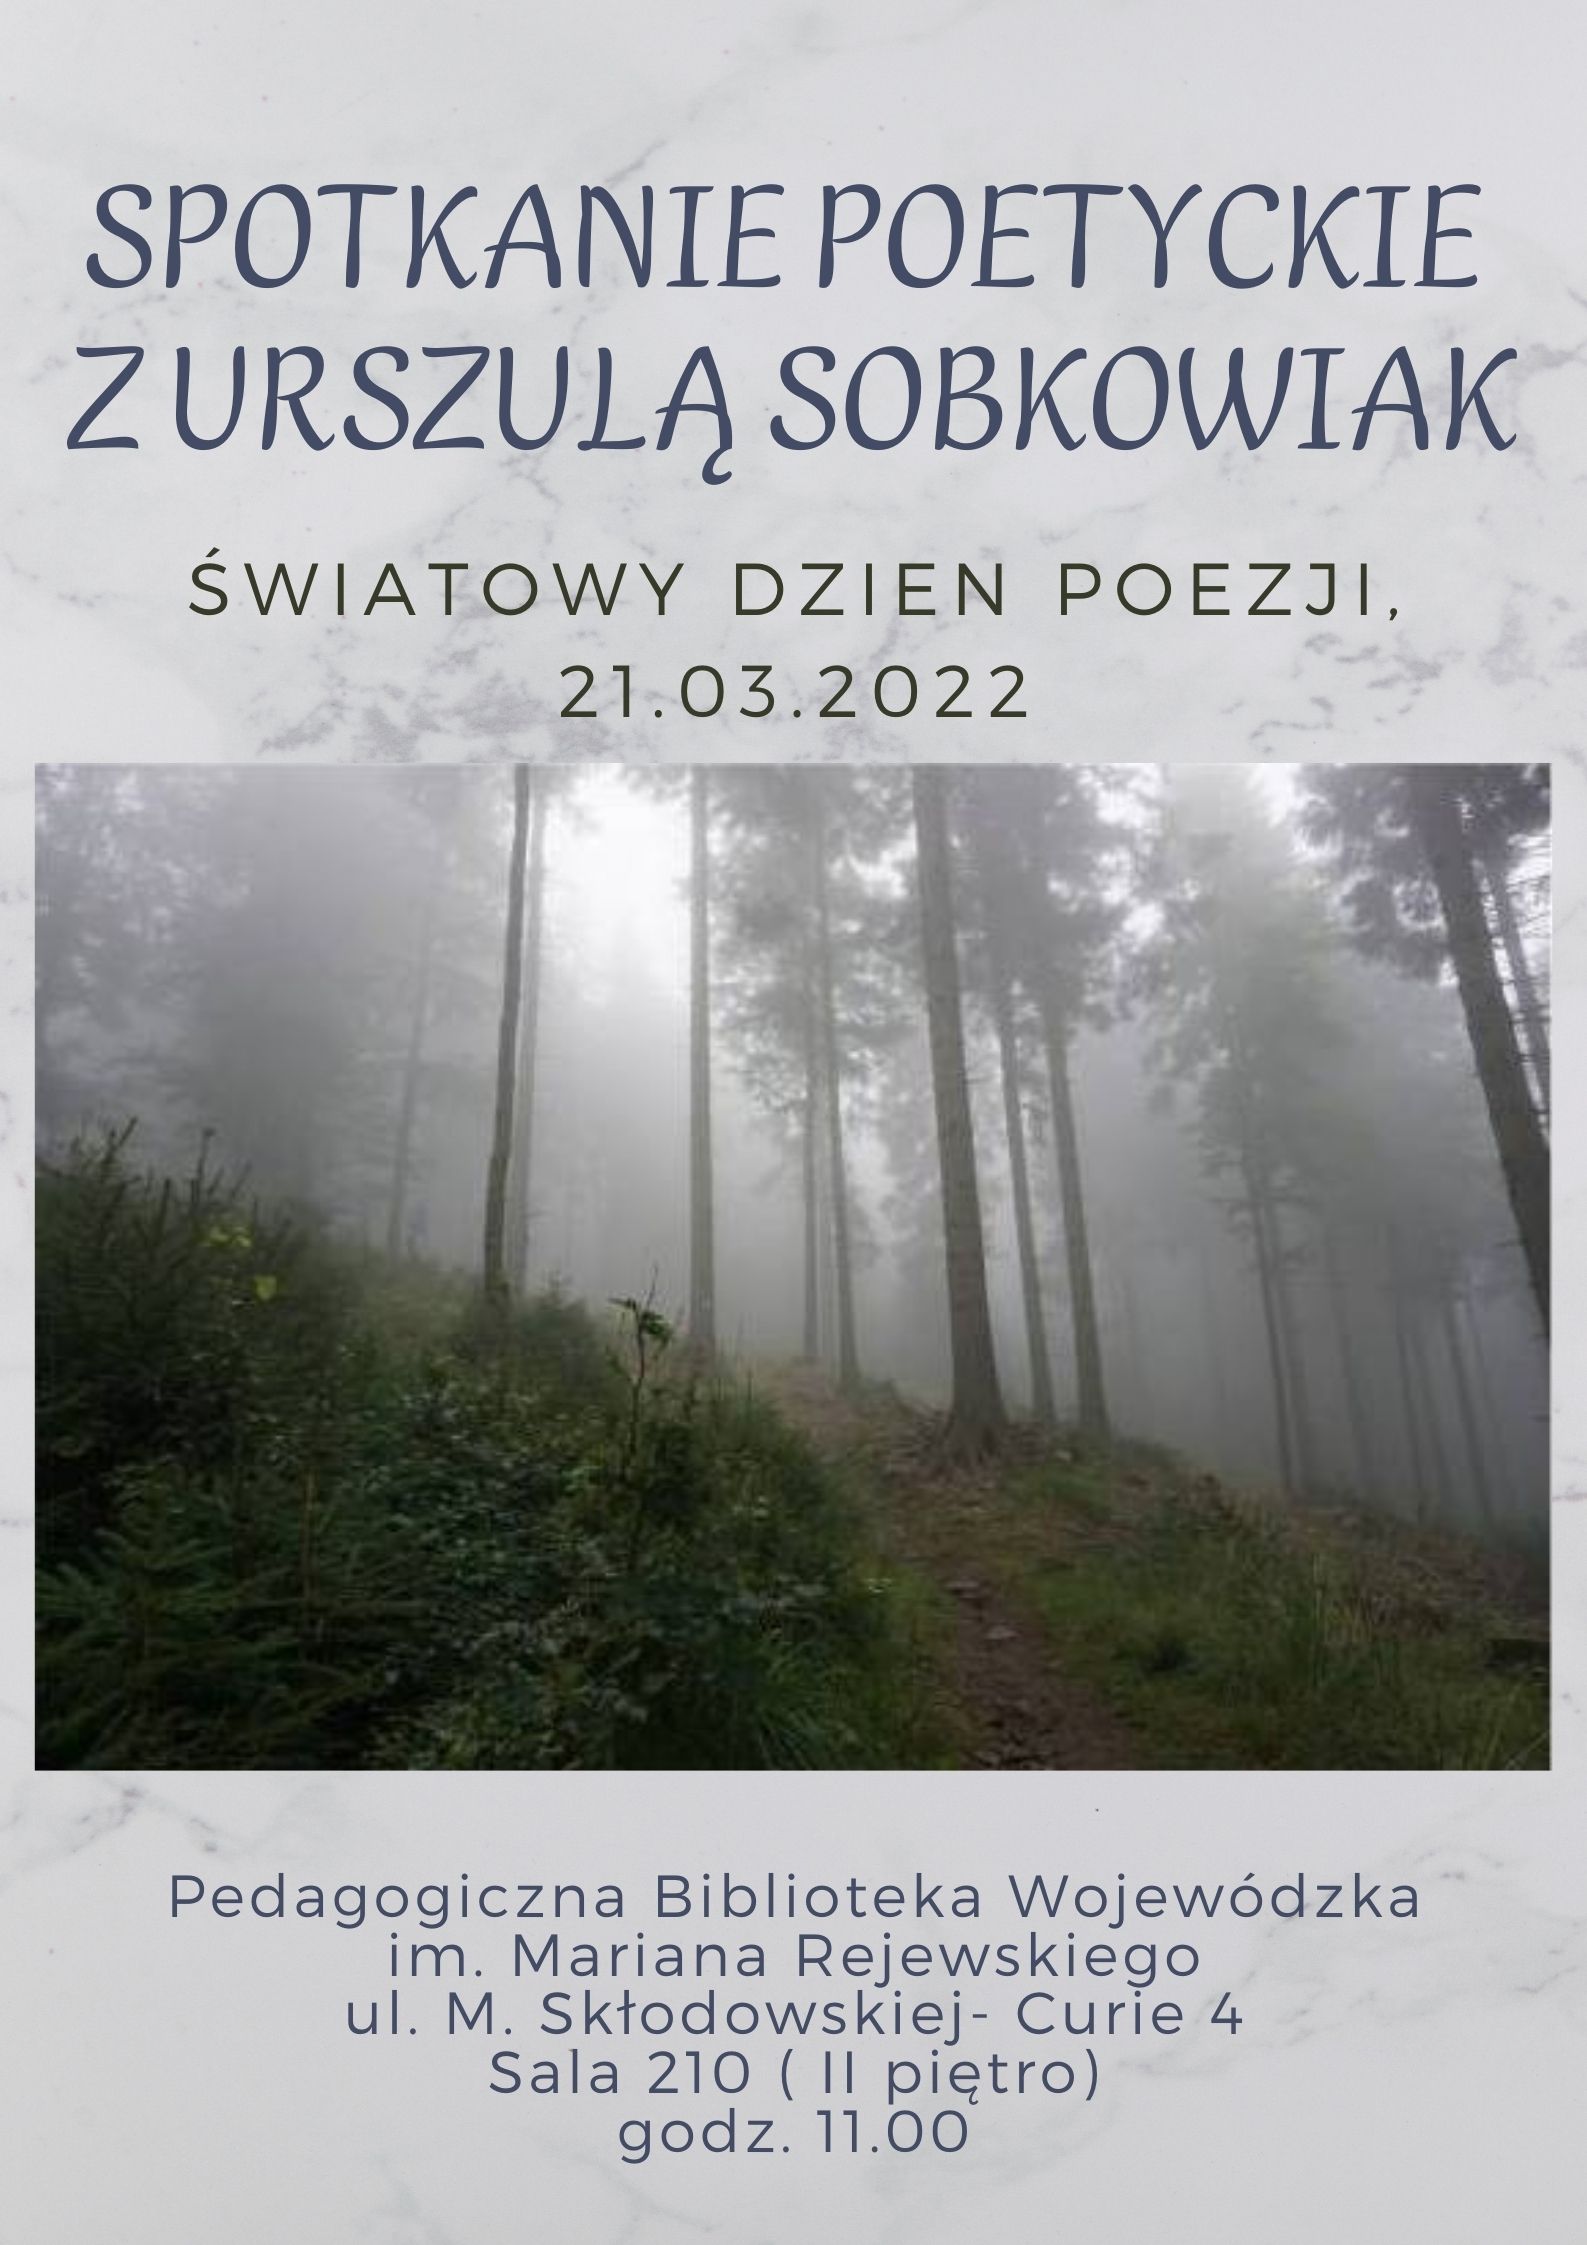 Plakat będący zaproszeniem na spotkanie poetyckie z Urszulą Sobkowiak w Światowym Dniu Poezji 21.03.2022 r. Plakat ilustrowany widokiem zamglonego lasu.